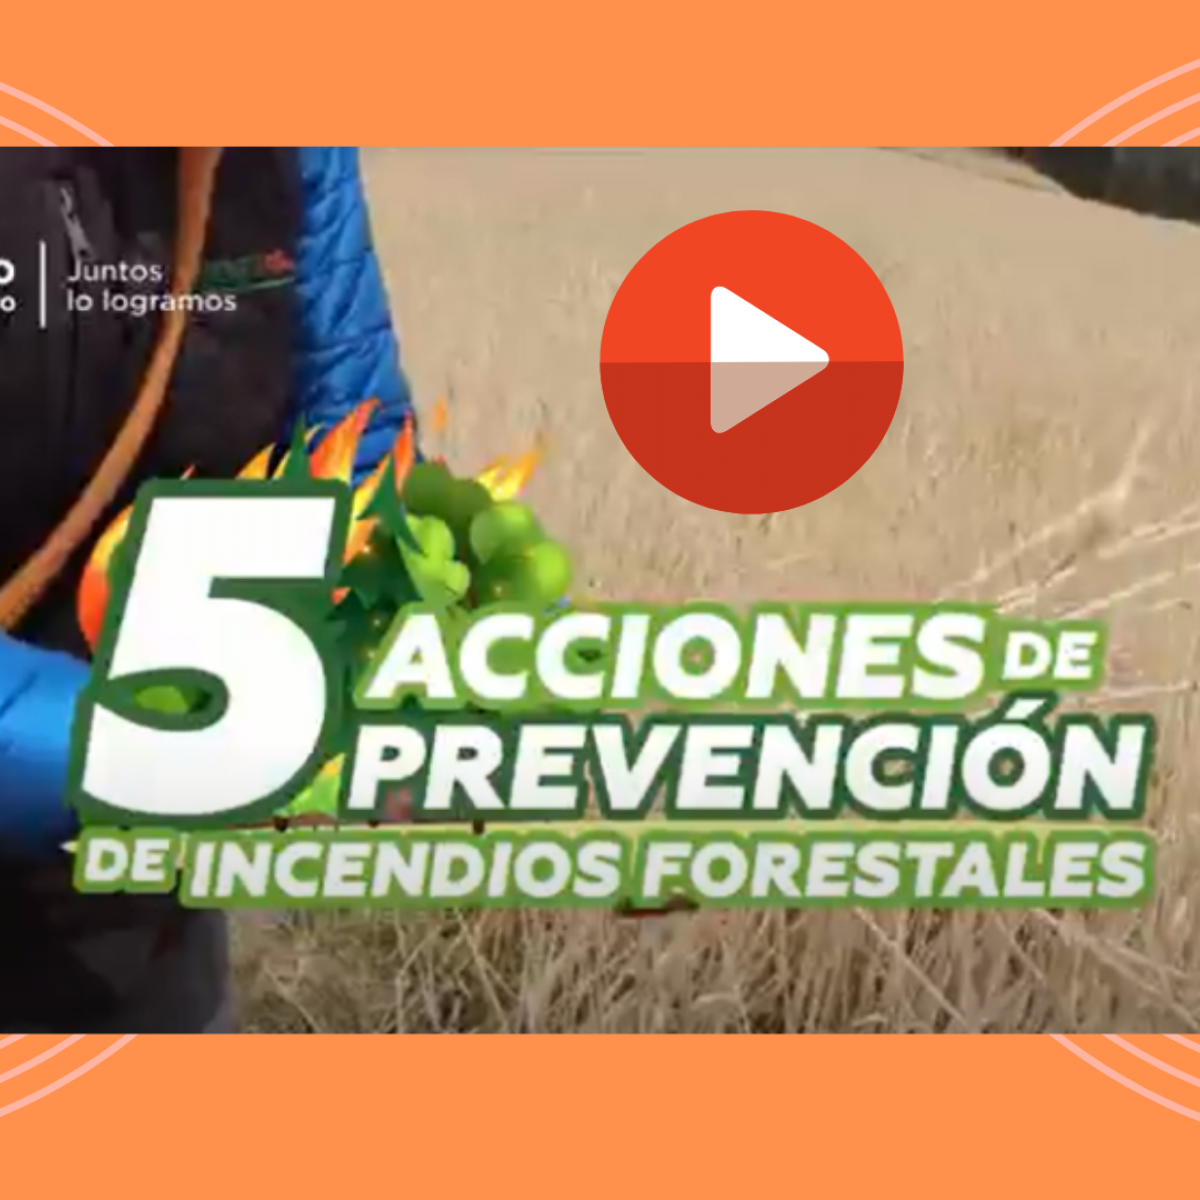 Imagen video conozca 5 tips para la prevención de incendios forestales